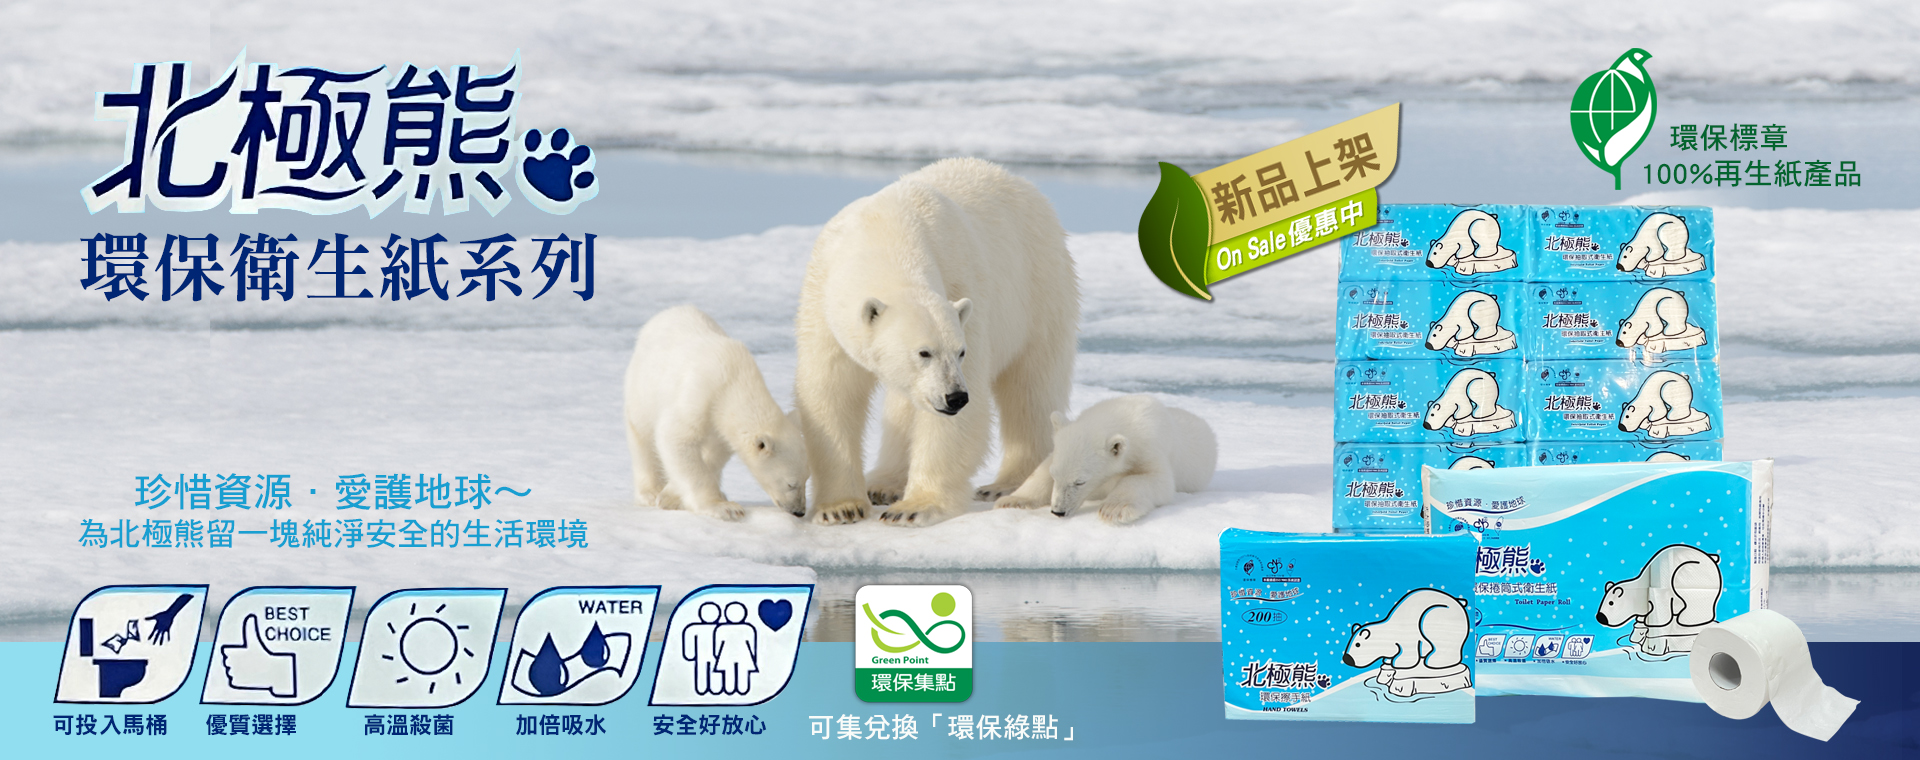 北極熊環保衛生紙